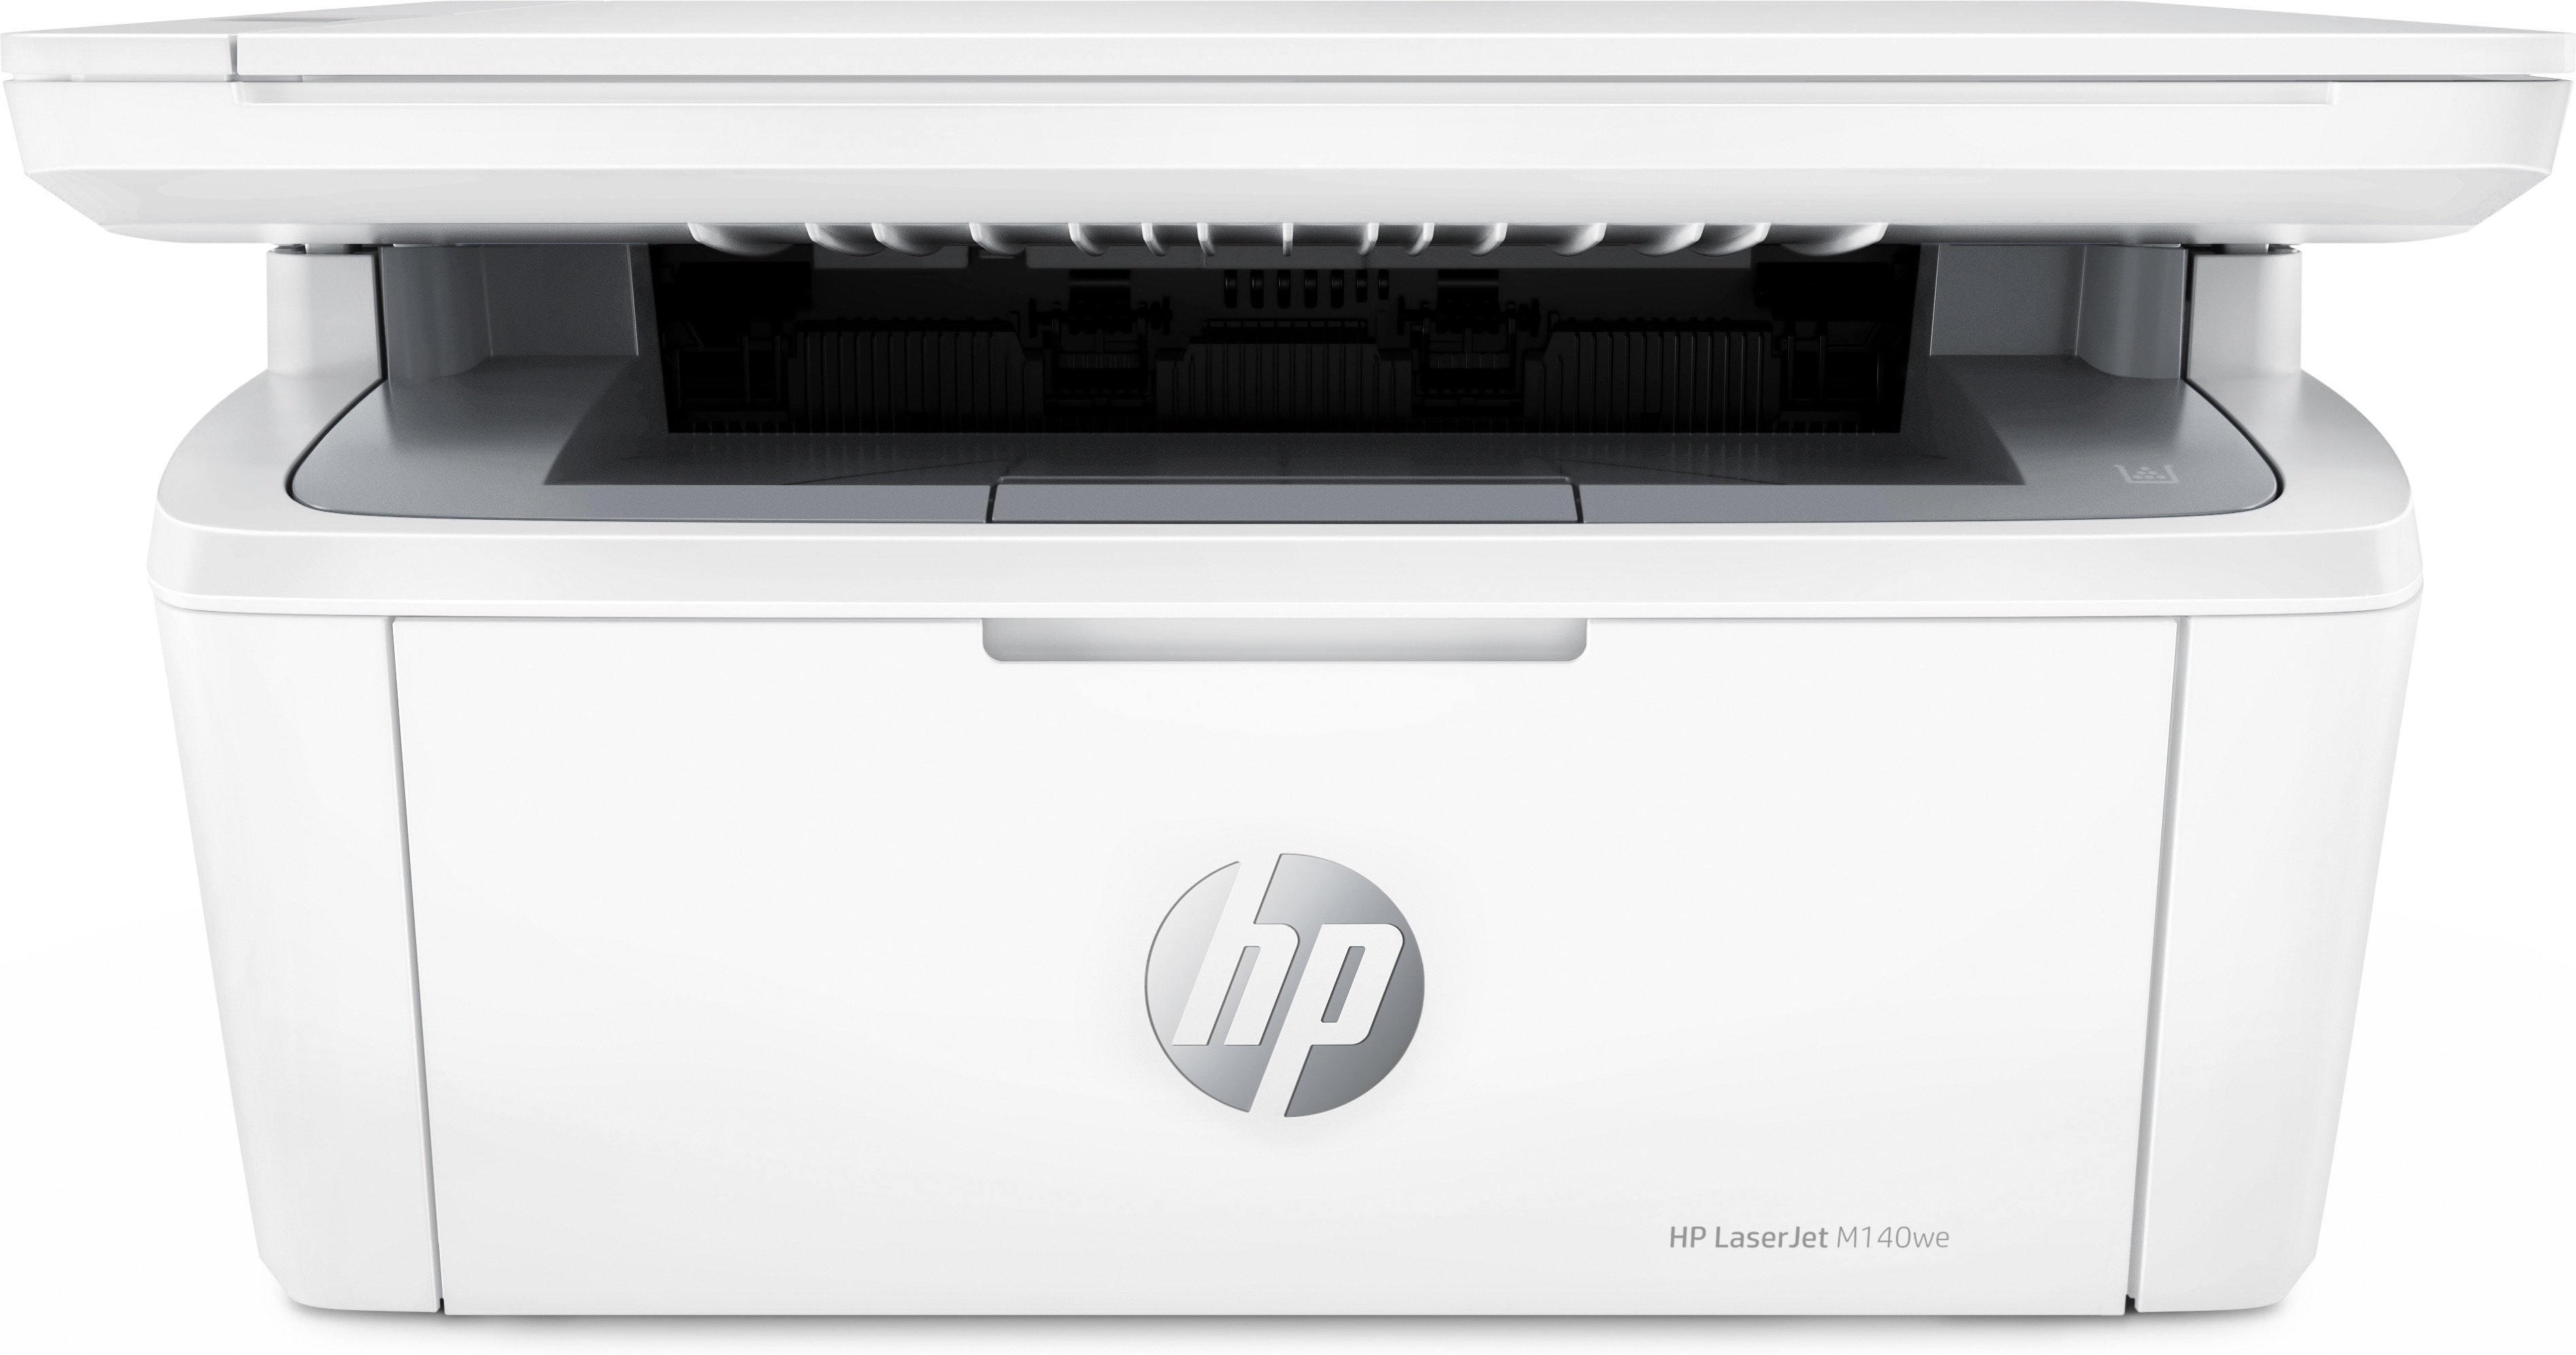 Monetair commentaar privacy HP LaserJet HP LaserJet MFP M140we printer, Zwart-wit, Printer voor Kleine  kantoren, Printen, kopiëren, scannen, Draadloos; Scannen naar e-mail;  Scannen naar pdf (7MD72E#B19) kopen » Centralpoint